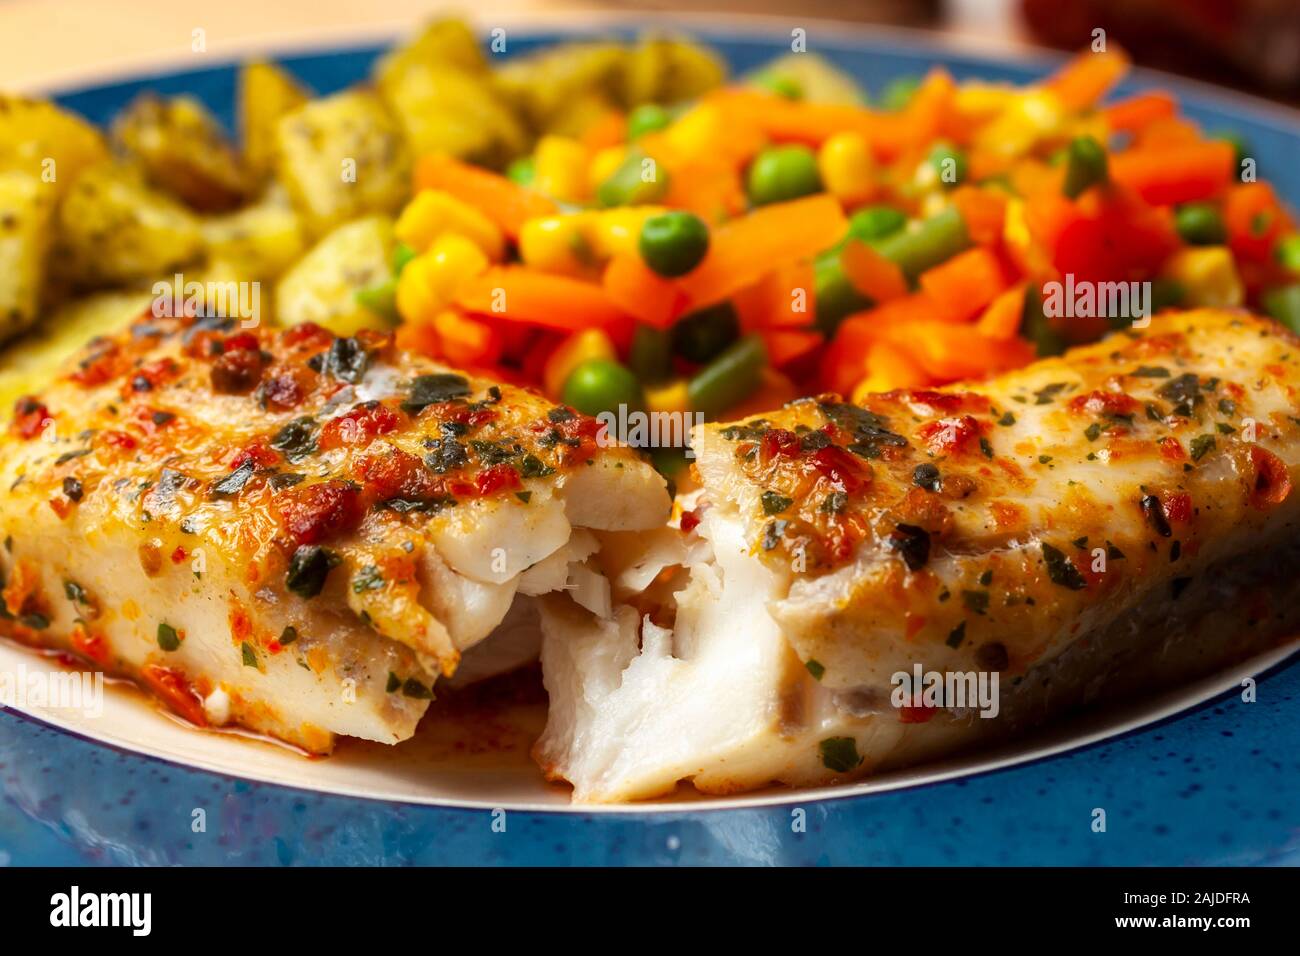 Goberge de l'chargrille poisson recouvert d'une sauce aux fines herbes et tomates sur une plaque avec un mélange de légumes et pommes de terre Banque D'Images